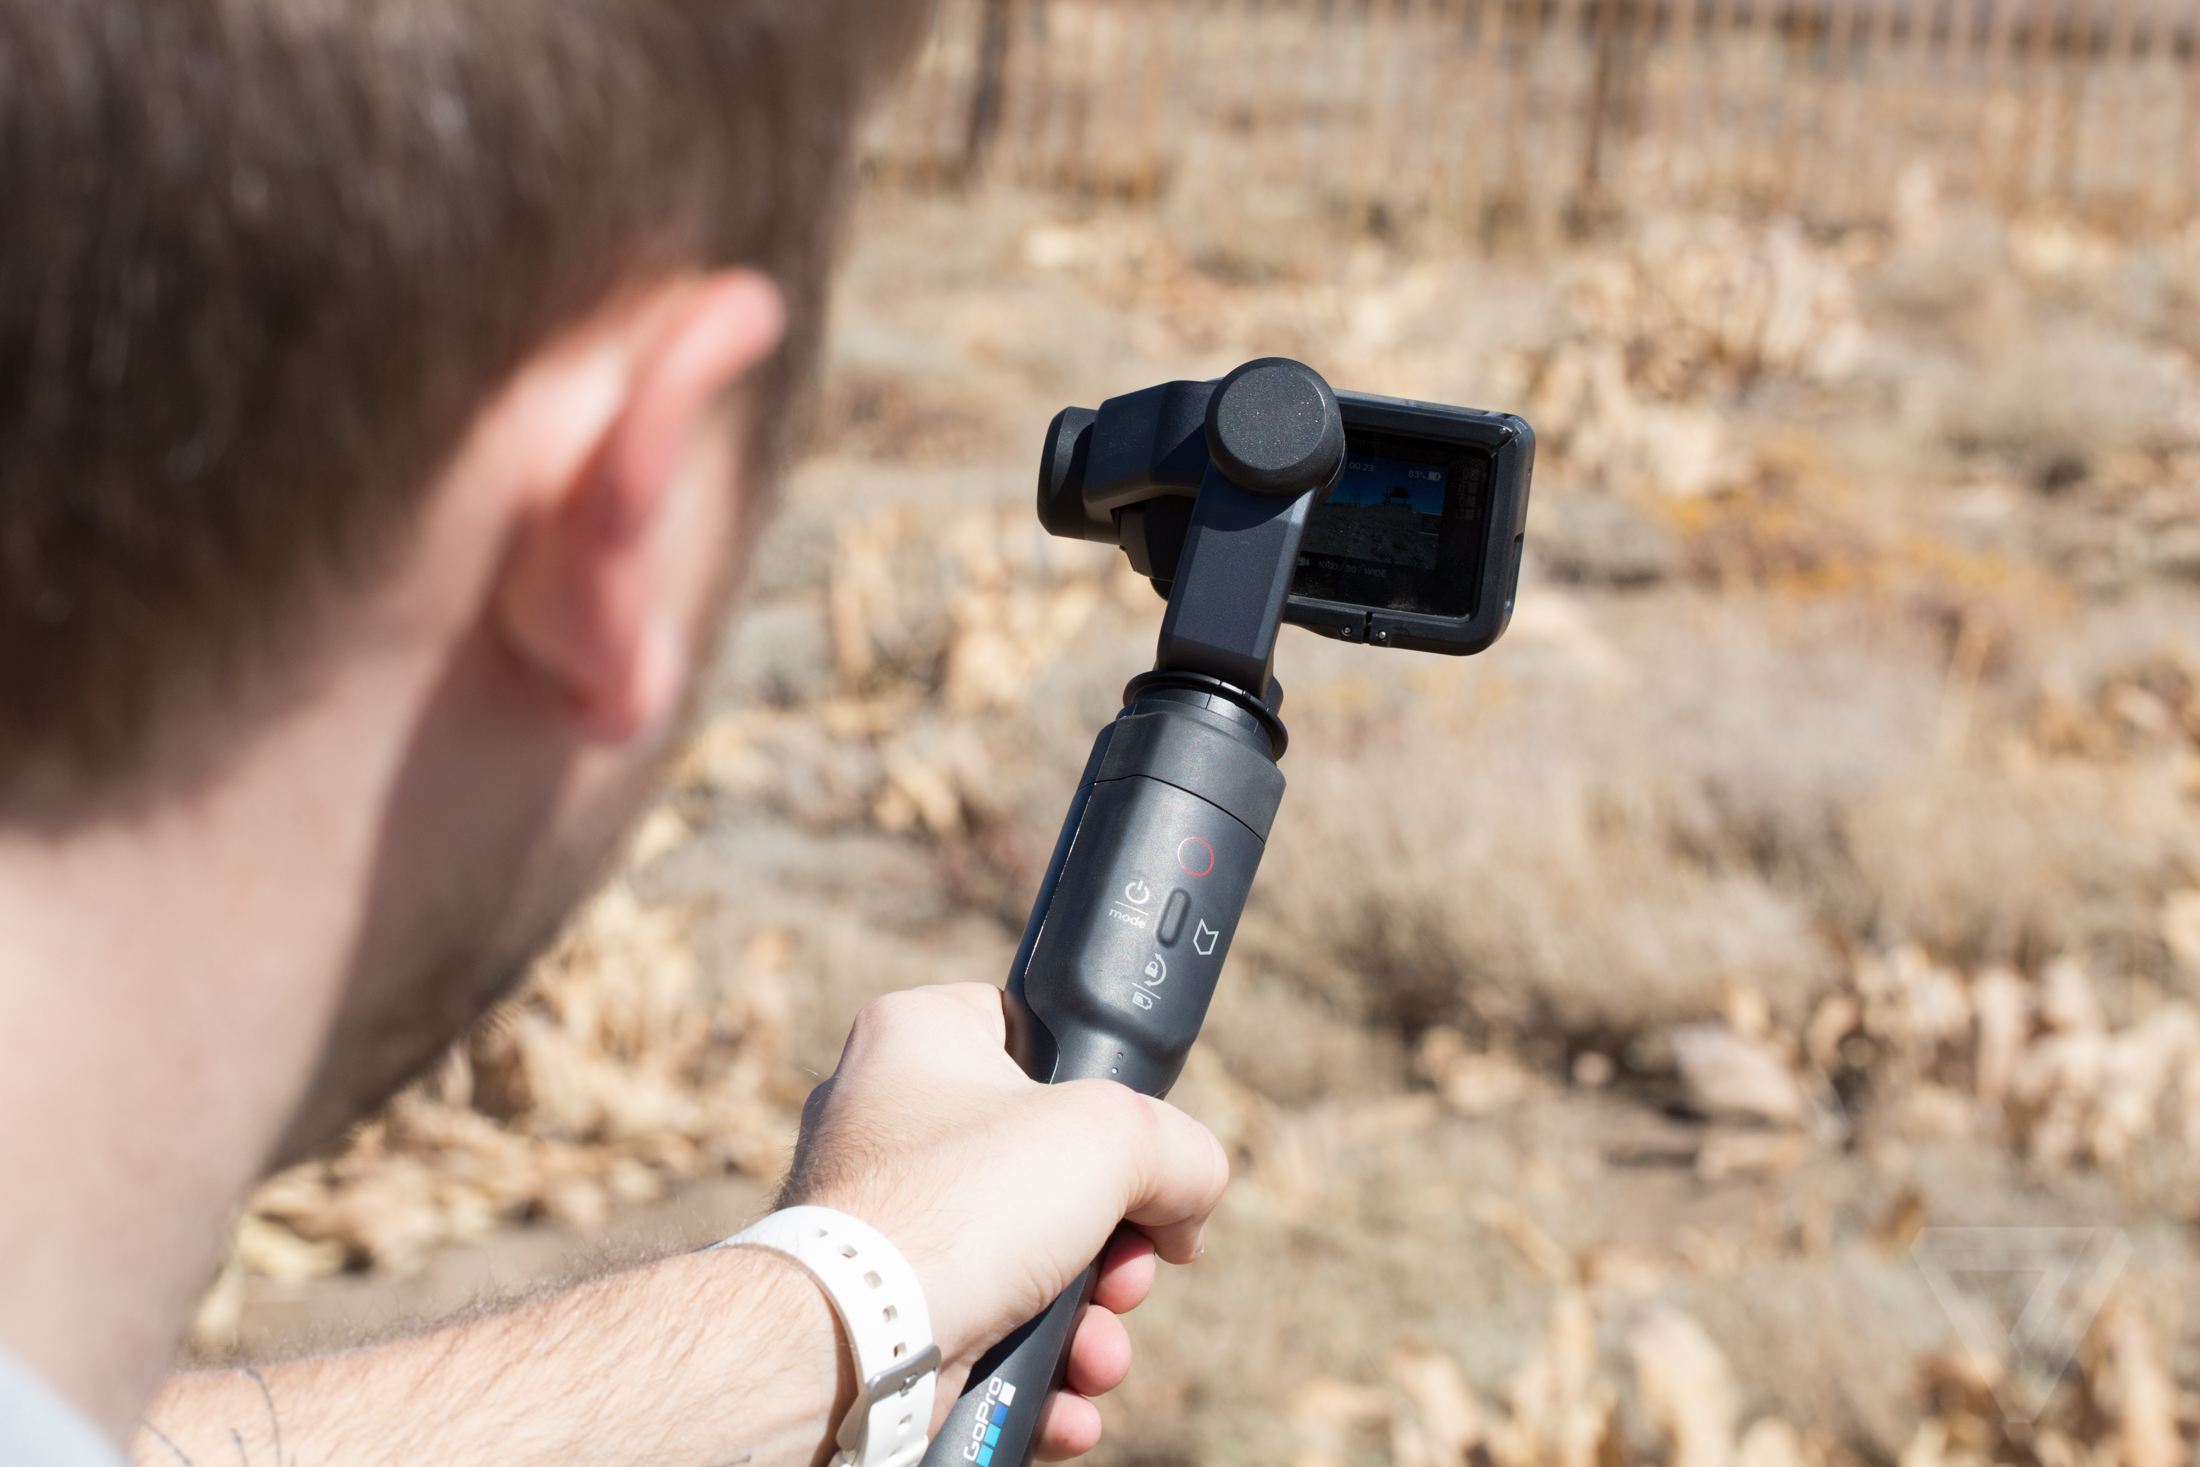 شركة GoPro تعلن رسميّا عن عصا التّحكّم Karma Grip الجديدة